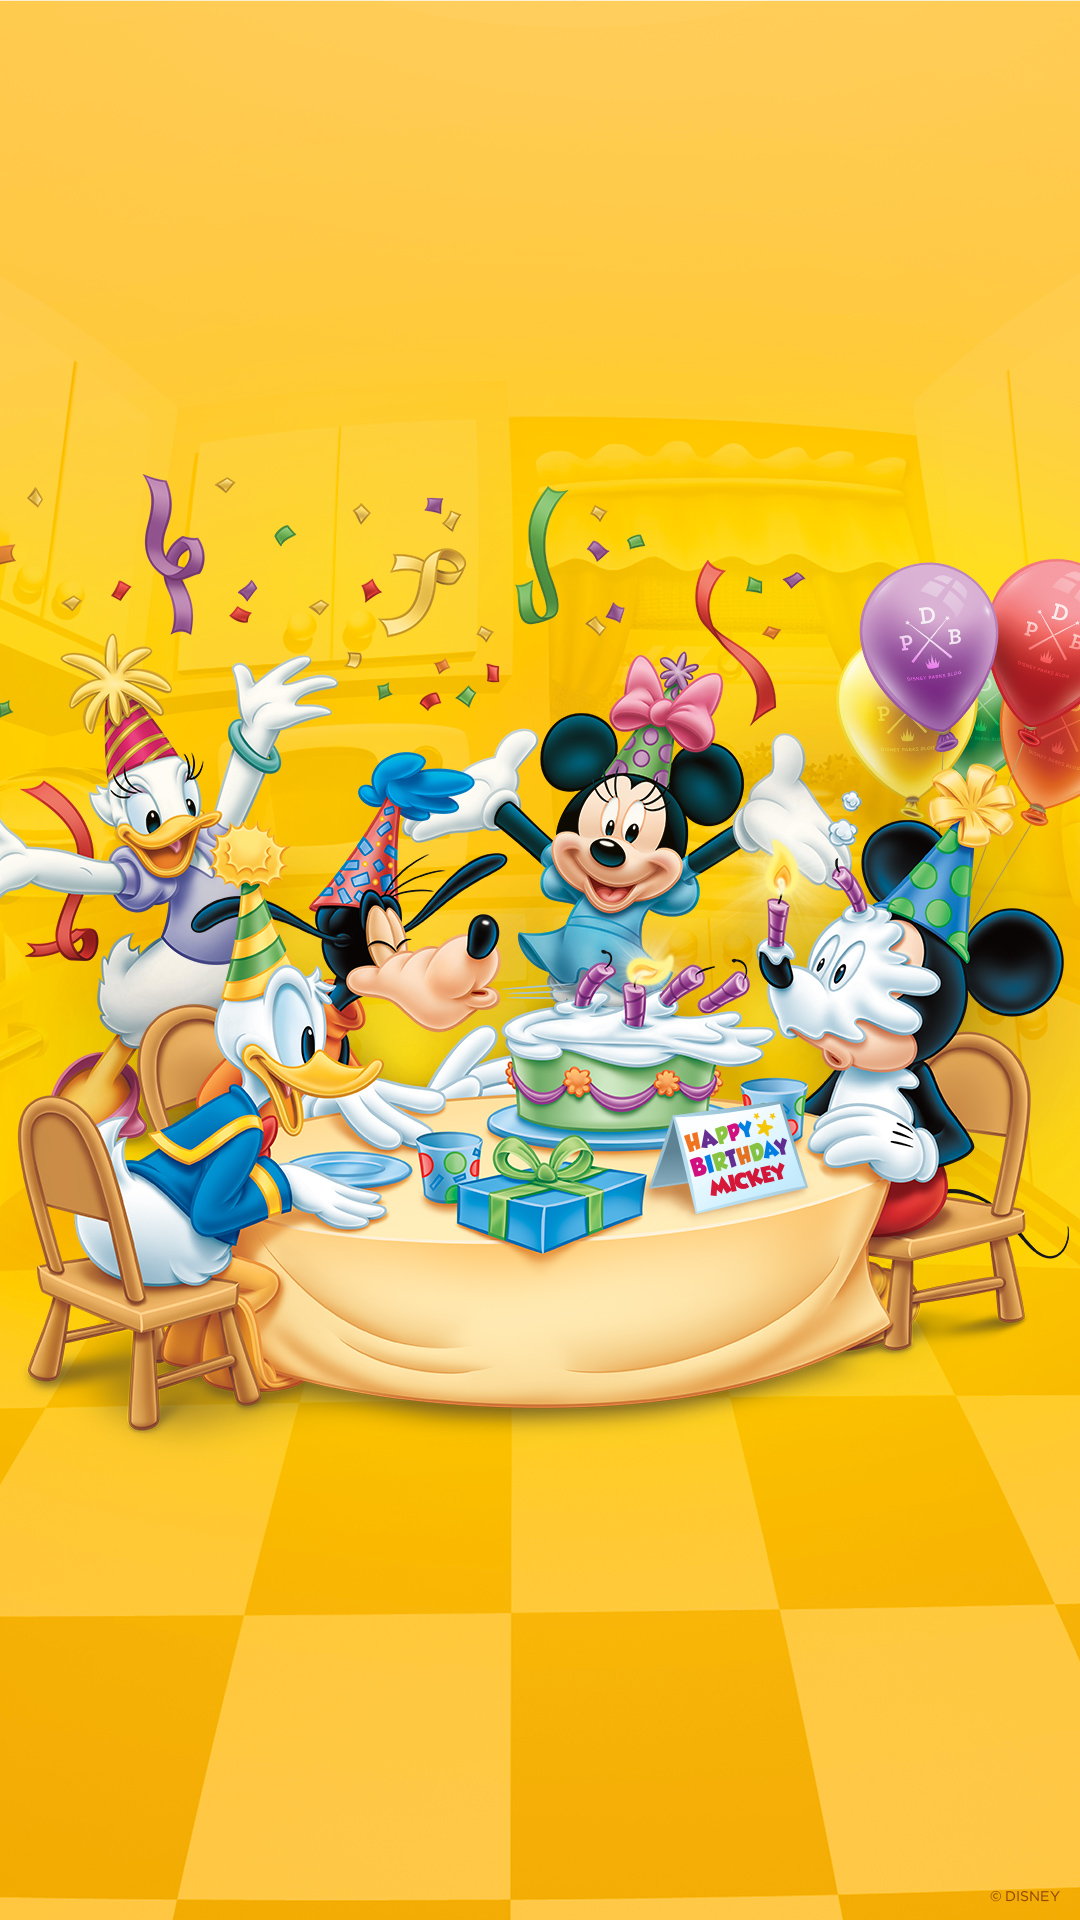 Happy Birthday Mickey!. Disney Parks Blog